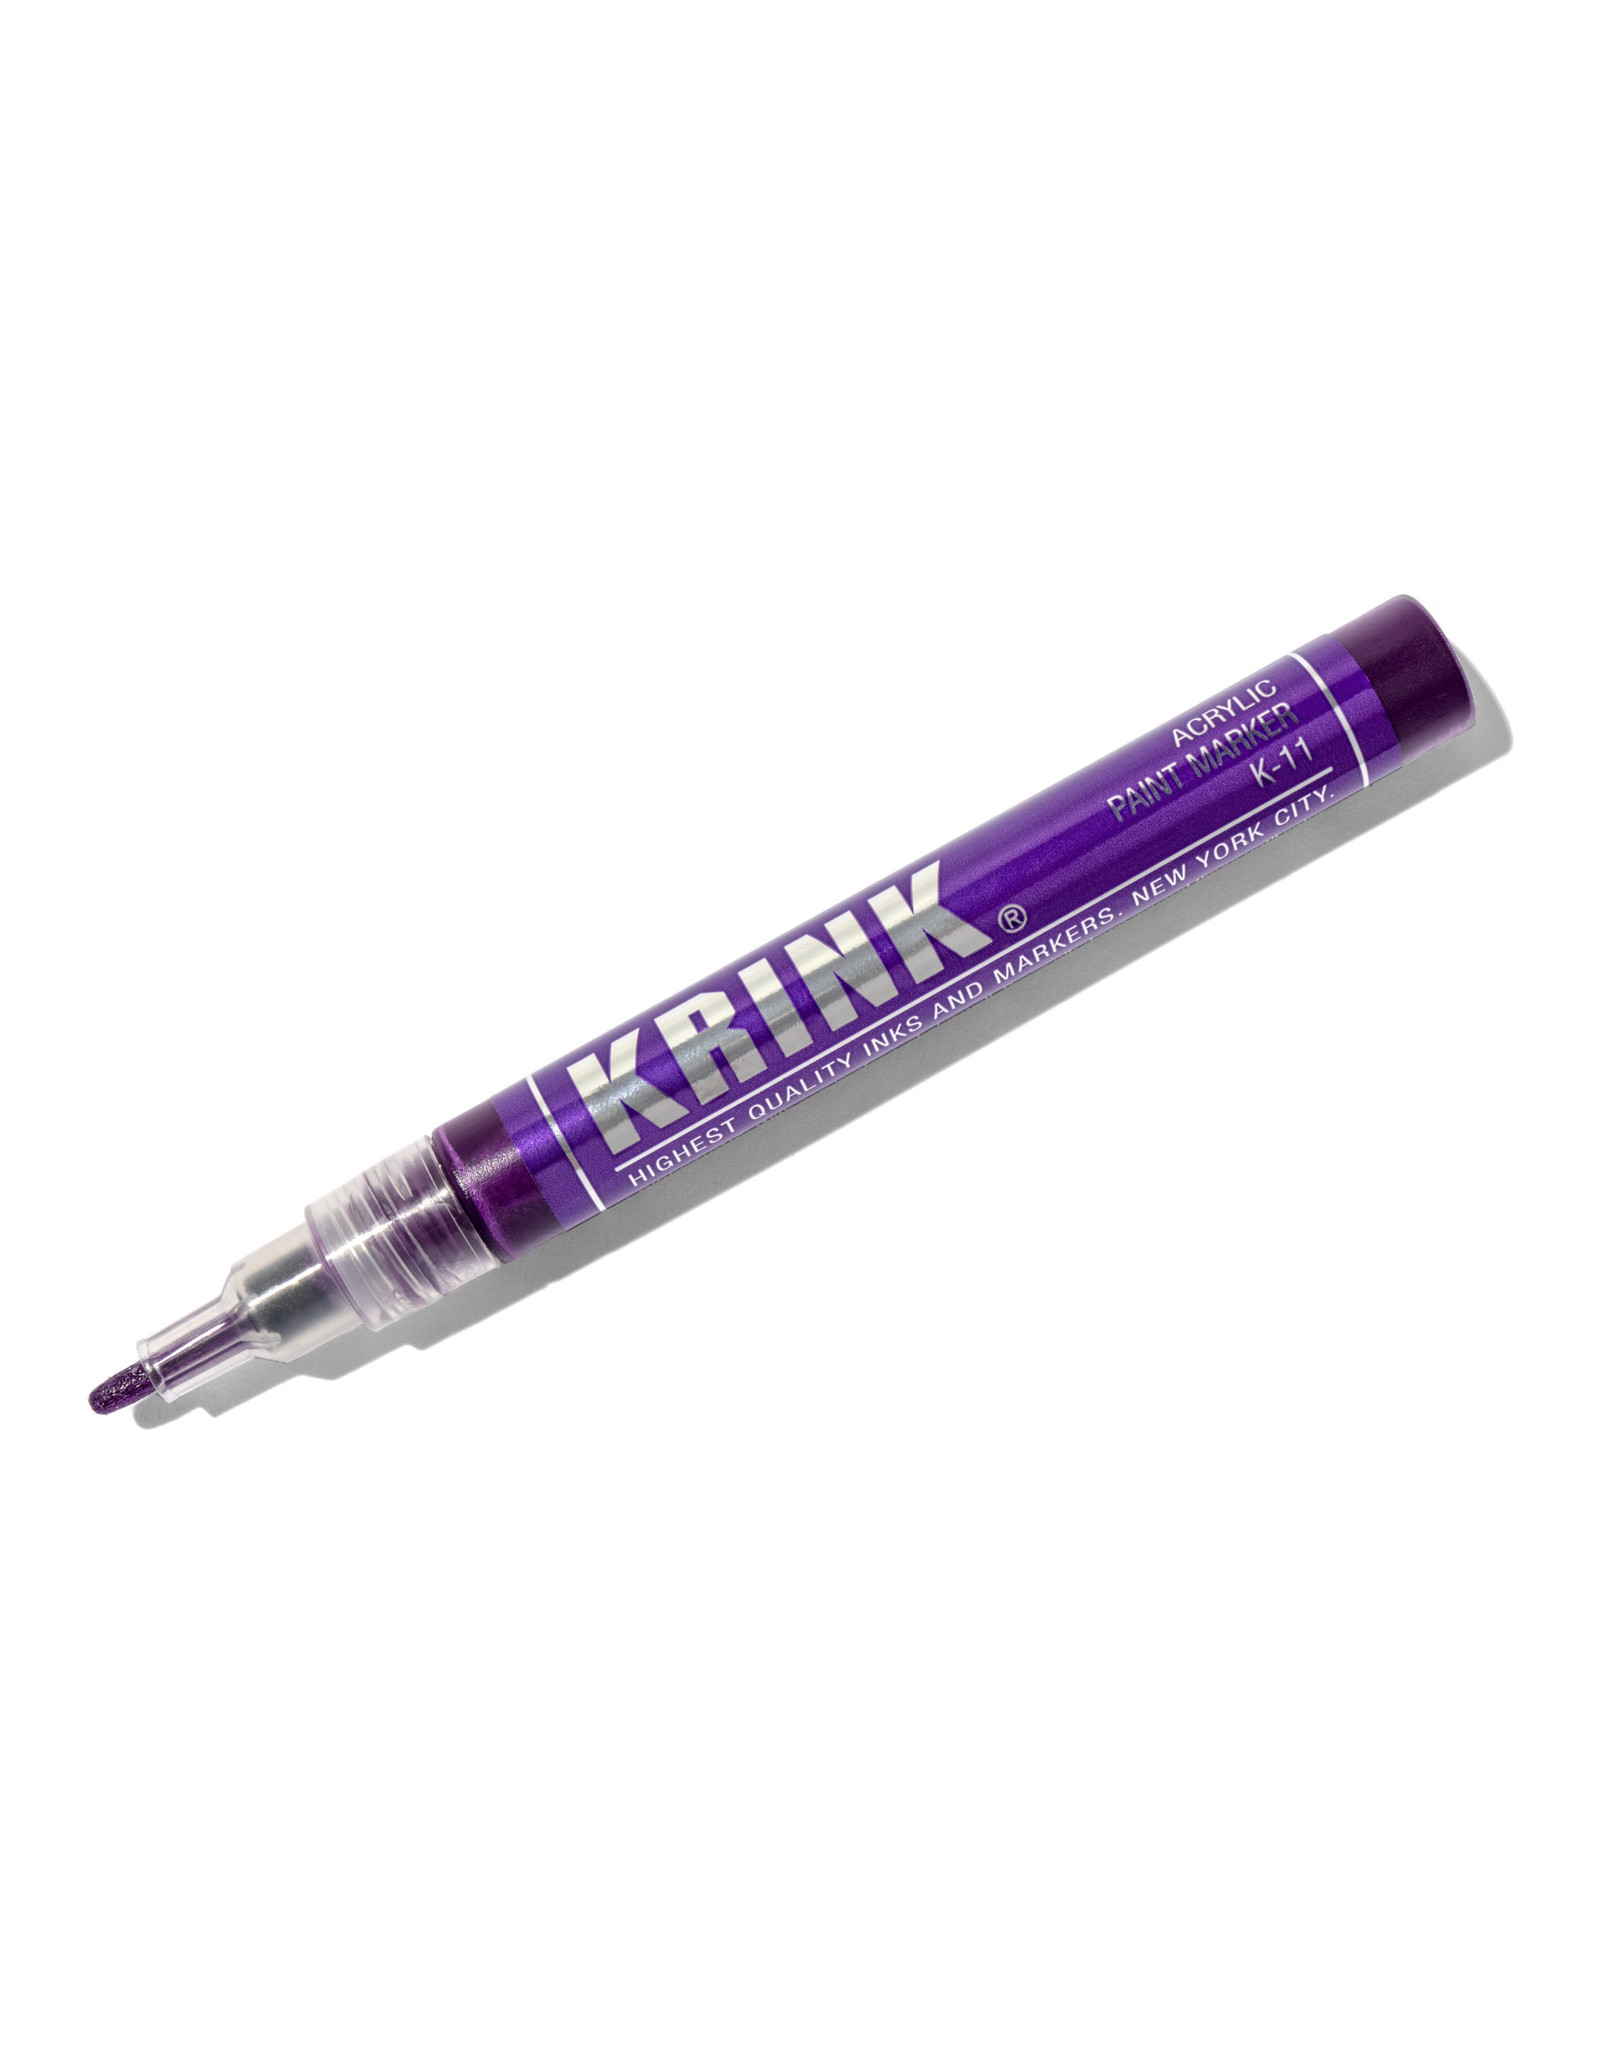 Krink Krink K-11 Acrylic Paint Marker, Purple